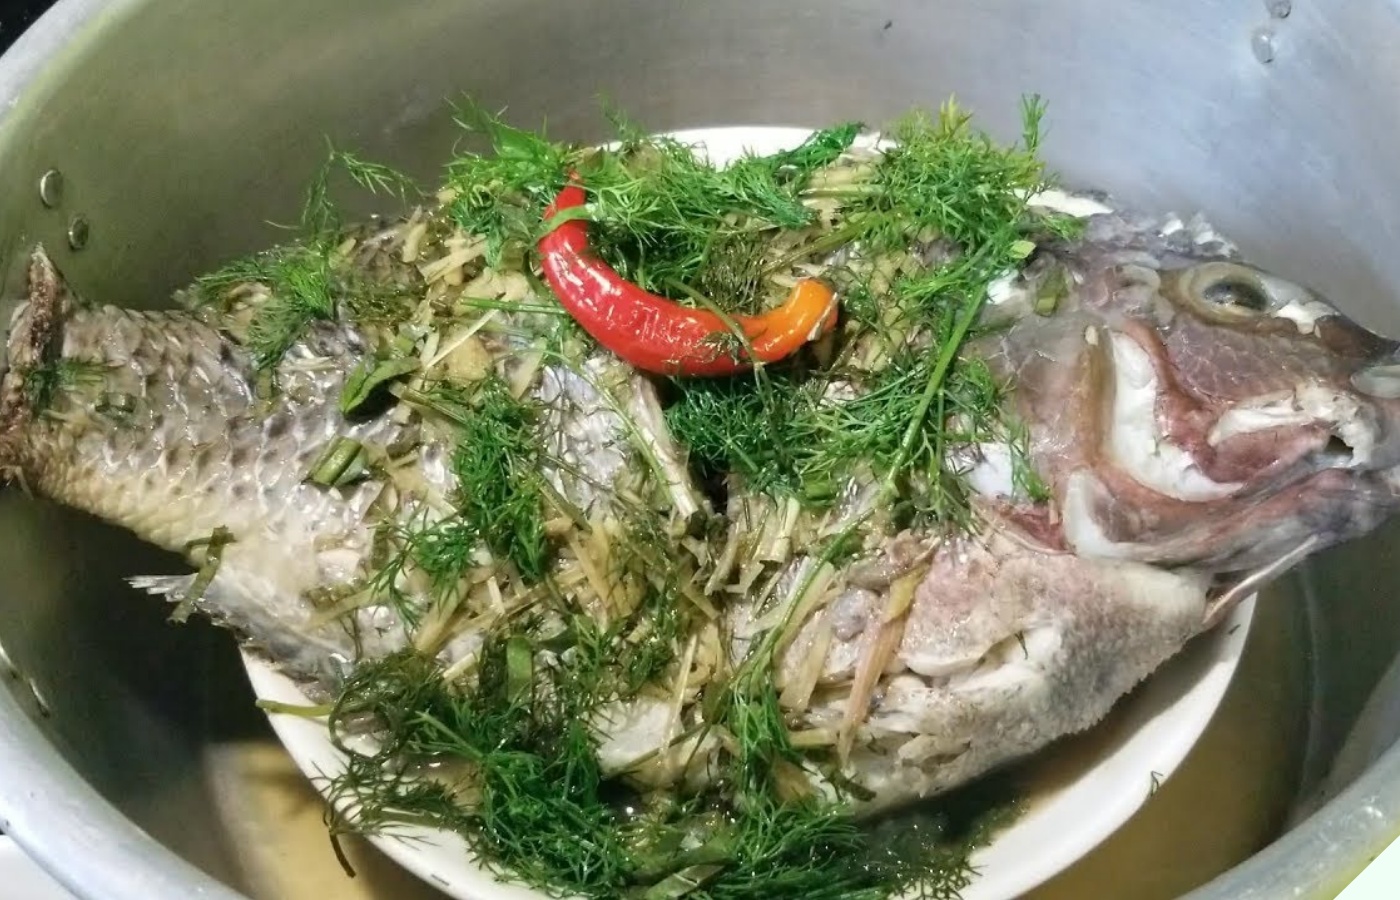 Ăn cá thế này bảo sao gan thận “nát bấy”, nhiều người Việt vô tư ăn 2 bộ phận này mà không biết cực độc - 6